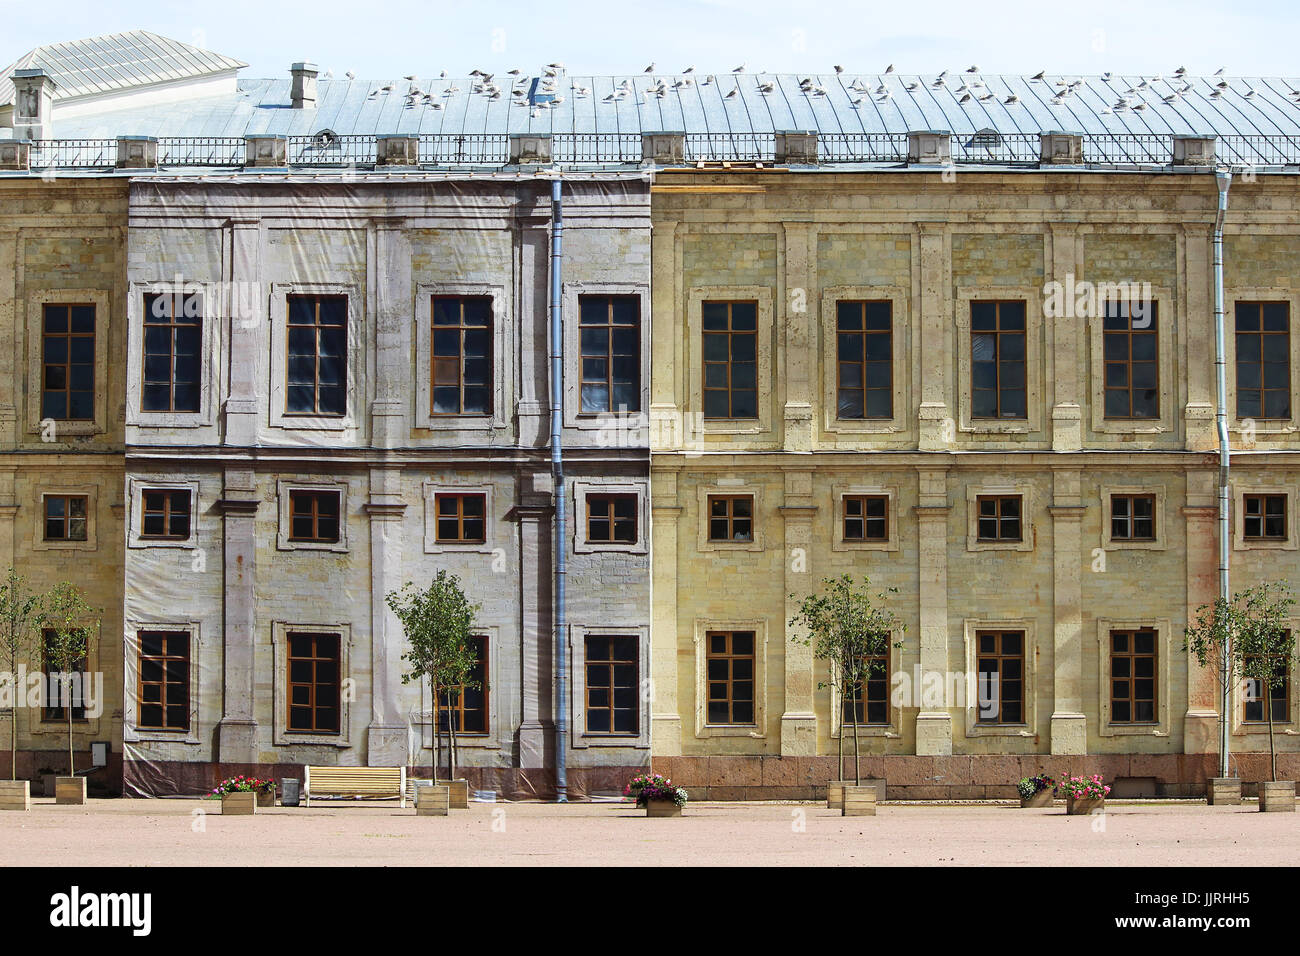 Palazzo Gatchina nel processo di restauro - impalcature nascosto dietro la falsa facciata, ripetendo il decor dell'edificio Foto Stock